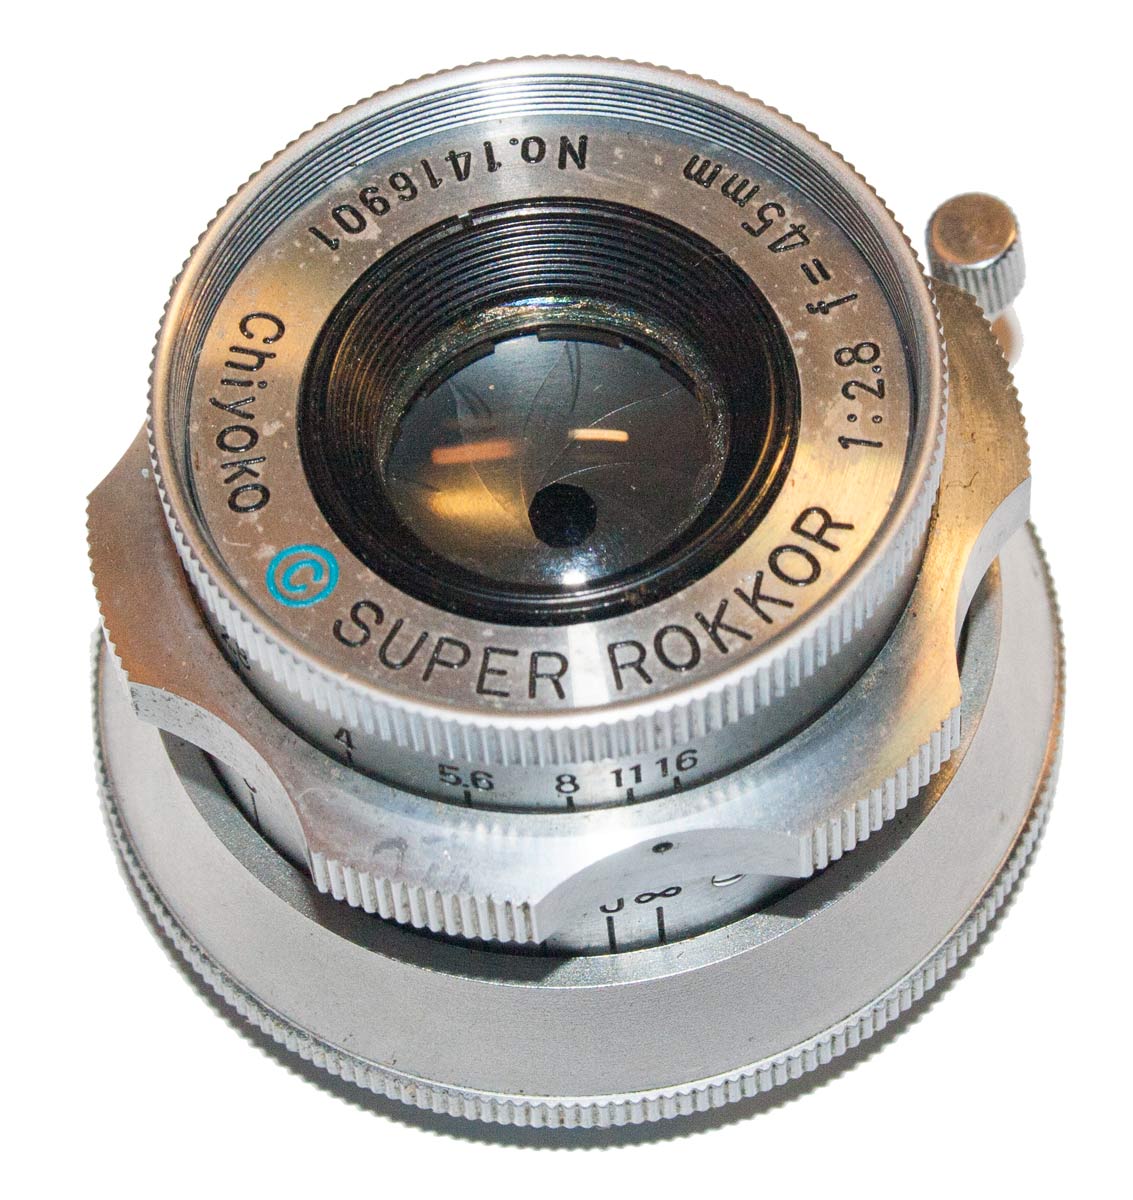 Super Rokkor 45mm f/2.8